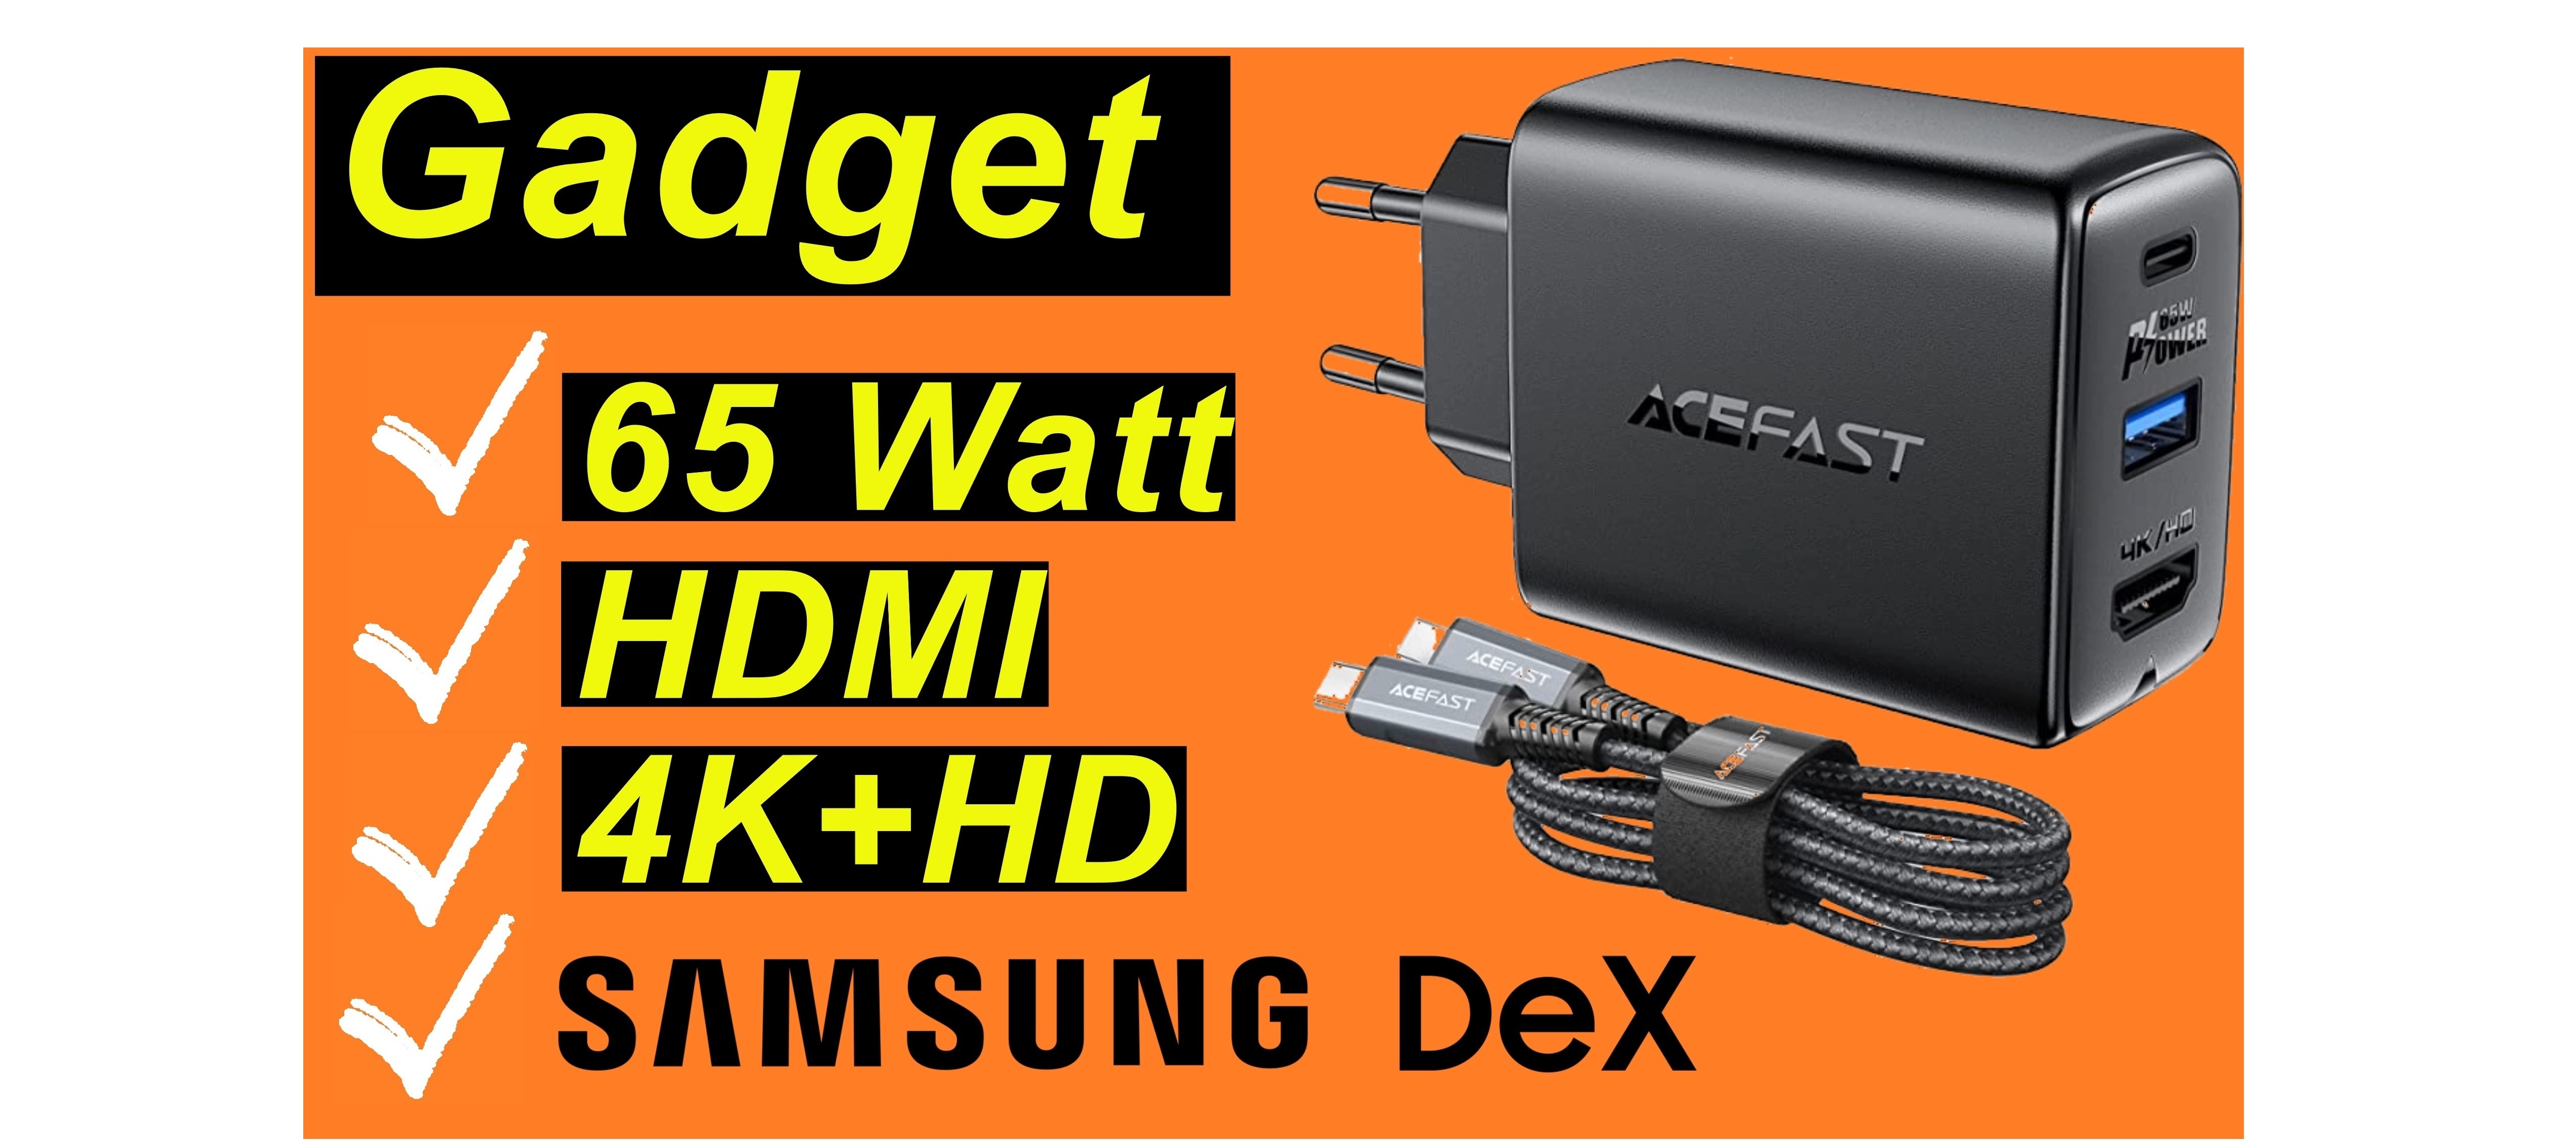 Gadget: 65 Watt. HMDI. 4K+HD. Samsung DeX Support. Acefast